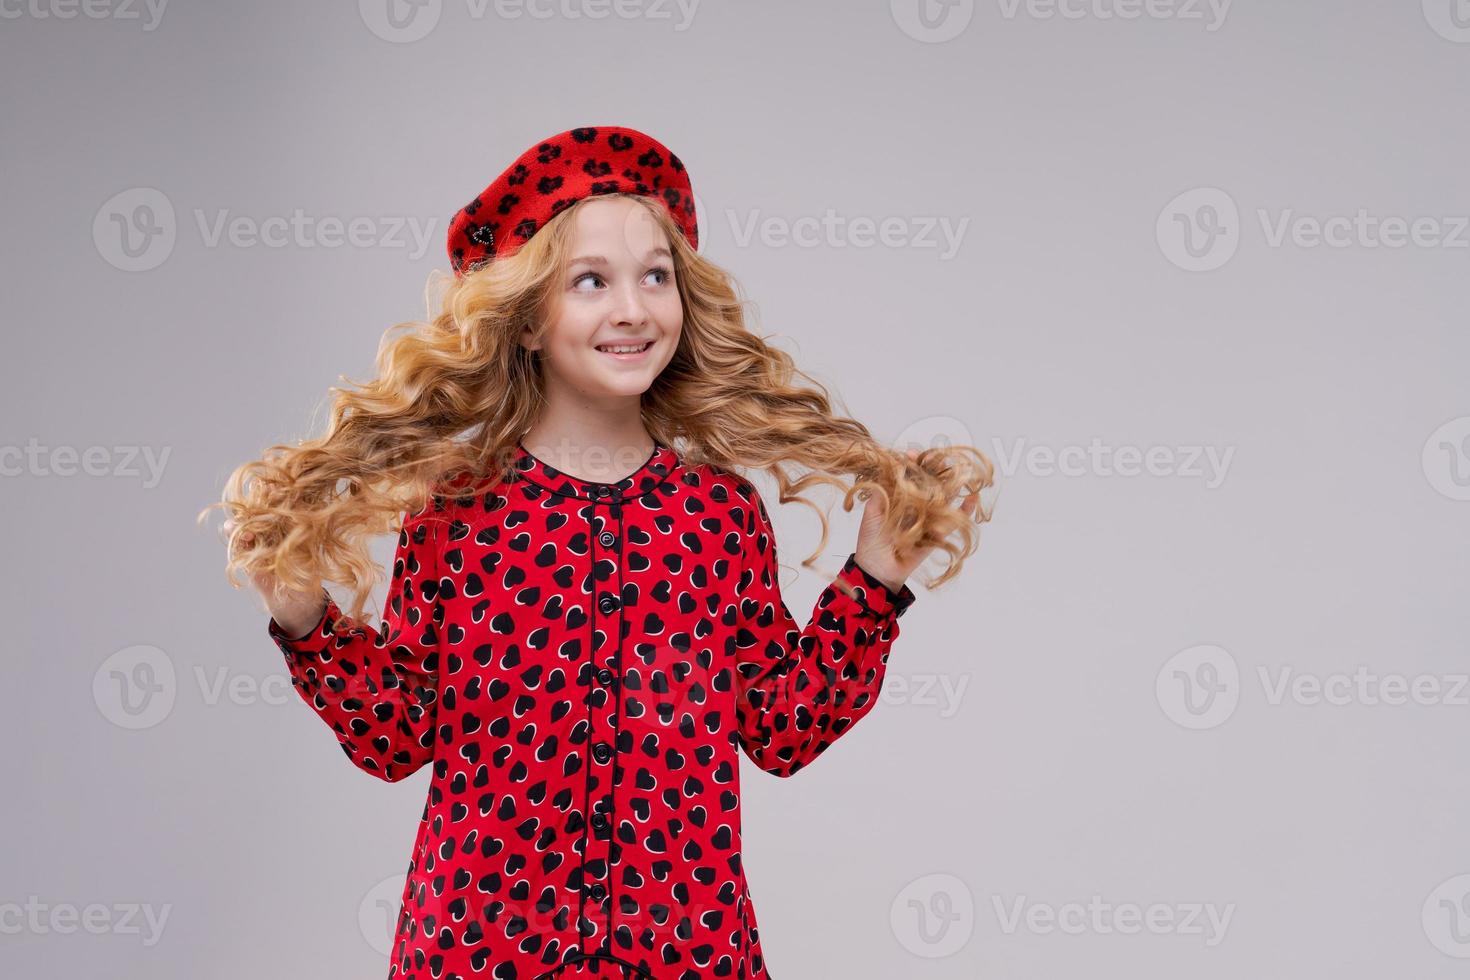 icono de la moda francesa. niño feliz con boina roja francesa y vestido en una luz foto